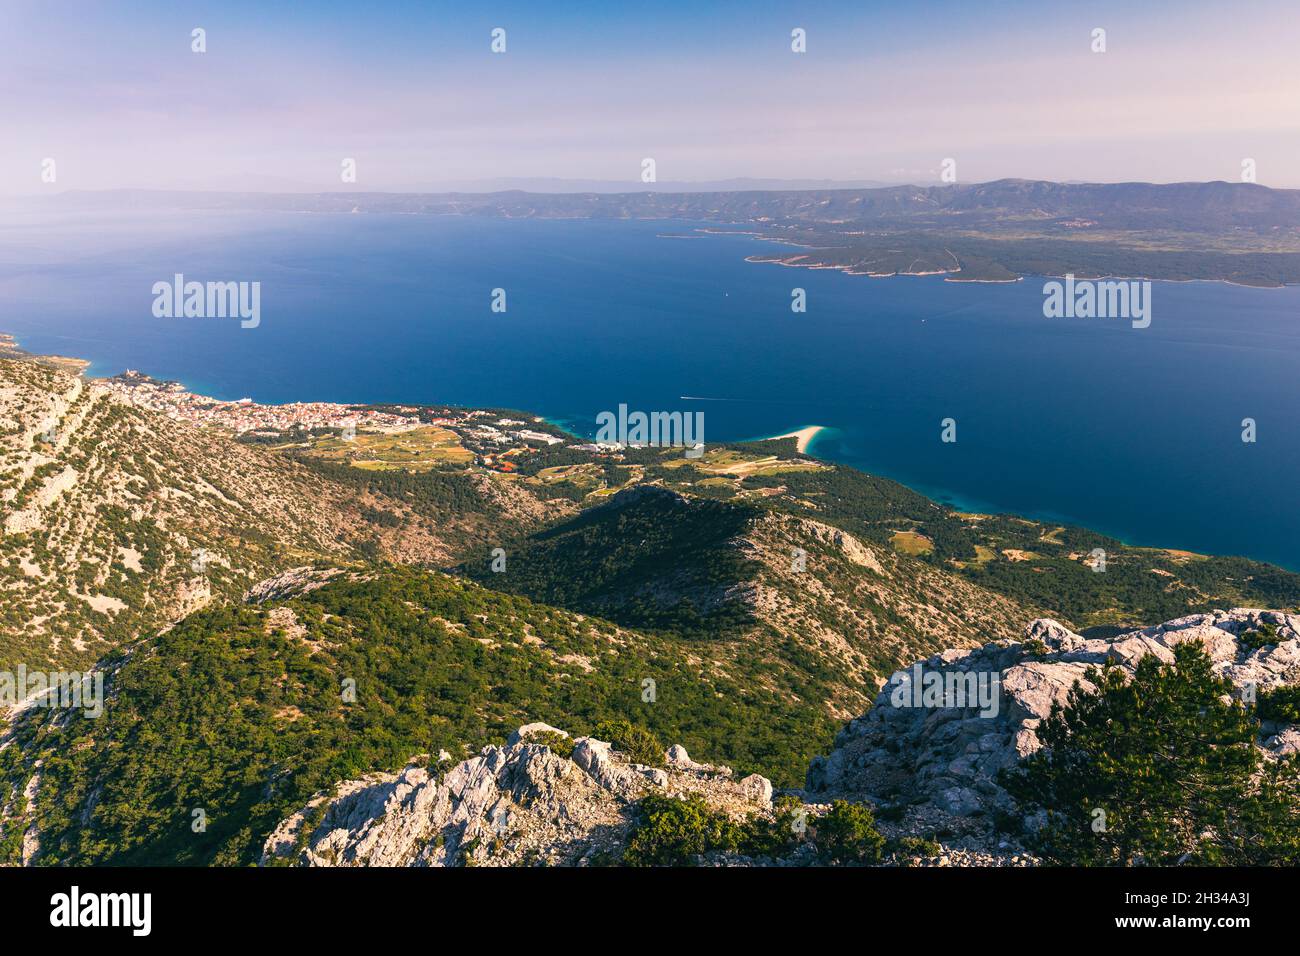 Blick auf die Berge und das Meer von Vidova Gora auf der Insel Brac. Blick vom Berg Vidova Gora auf der Insel Brac in Kroatien mit dem berühmten Wahrzeichen Z Stockfoto